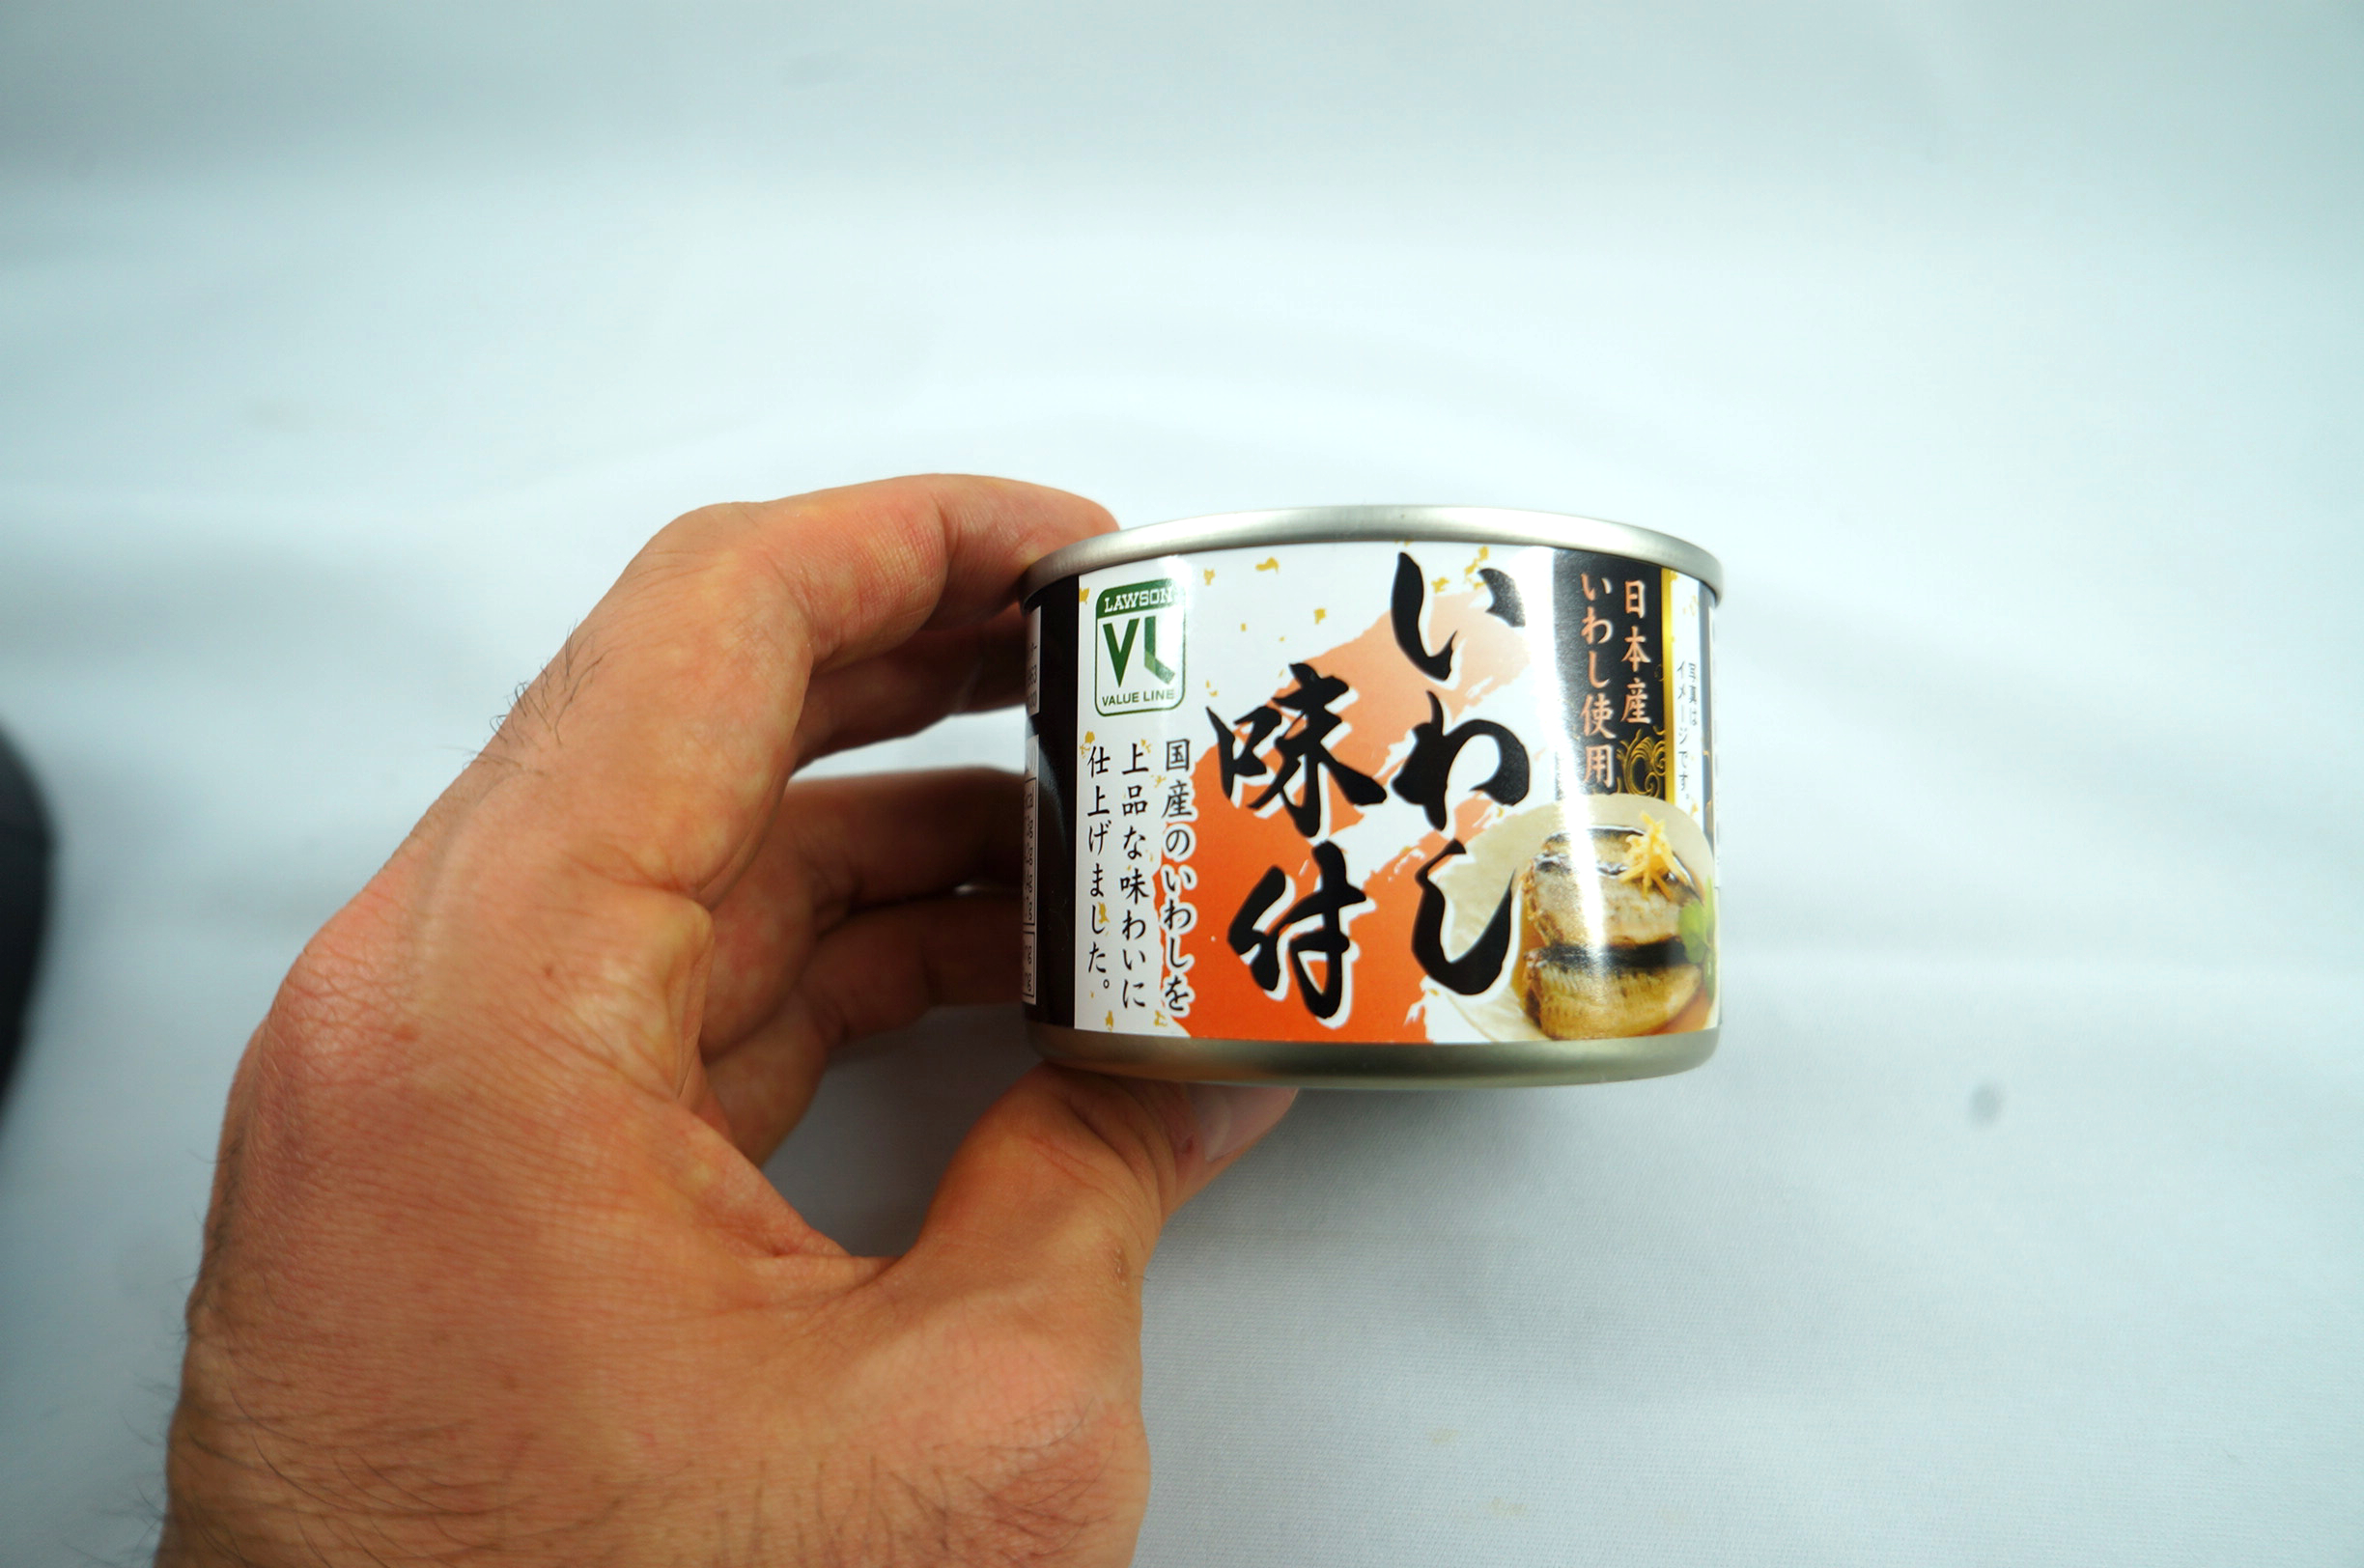 ローソンバリューラインのいわし味付日本産いわし使用